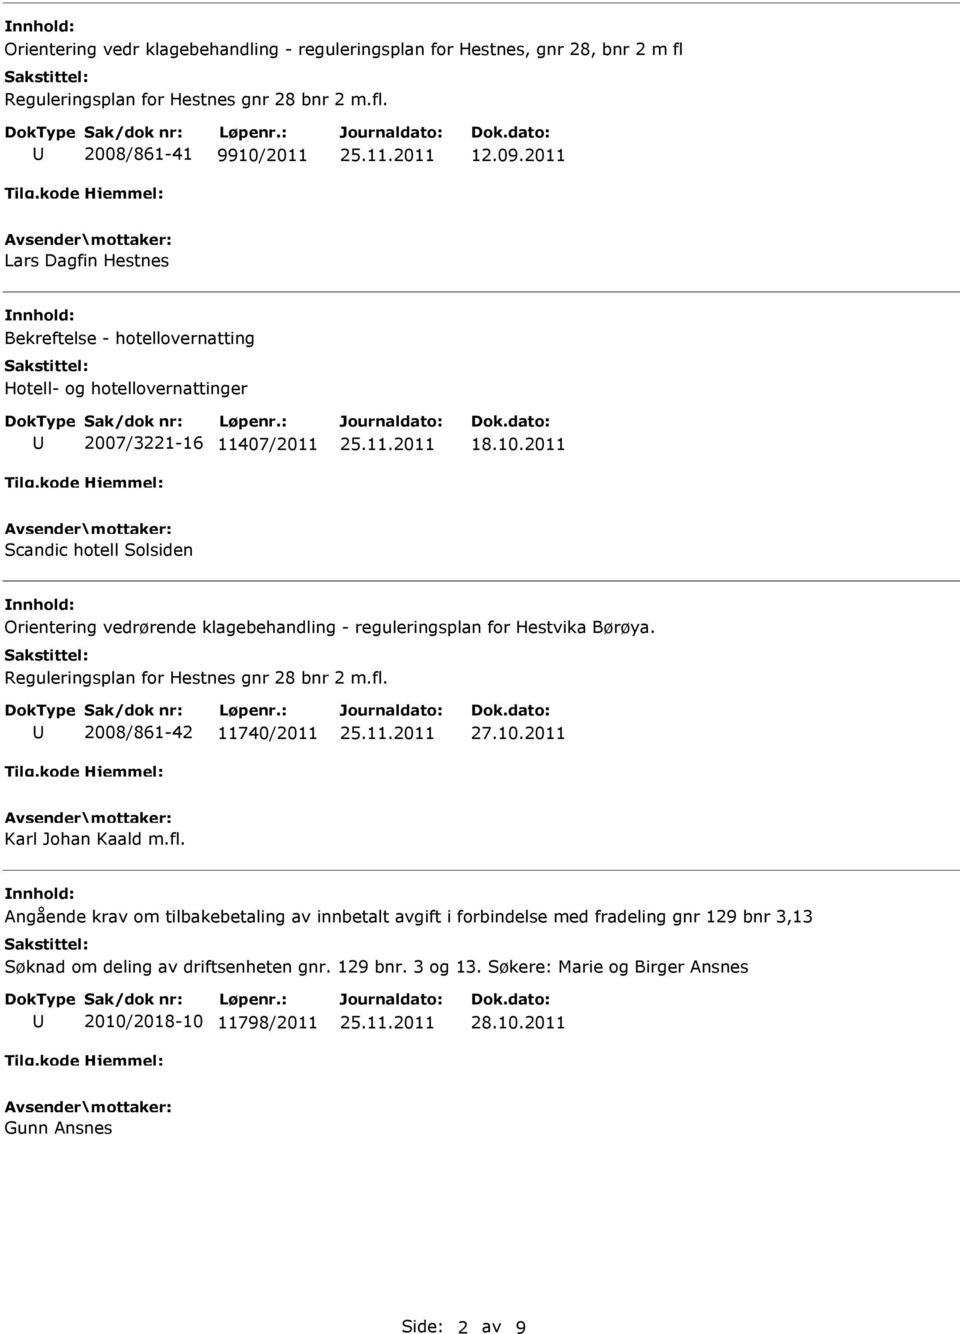 2011 Scandic hotell Solsiden Orientering vedrørende klagebehandling - reguleringsplan for Hestvika Børøya. Reguleringsplan for Hestnes gnr 28 bnr 2 m.fl. 2008/861-42 11740/2011 27.10.